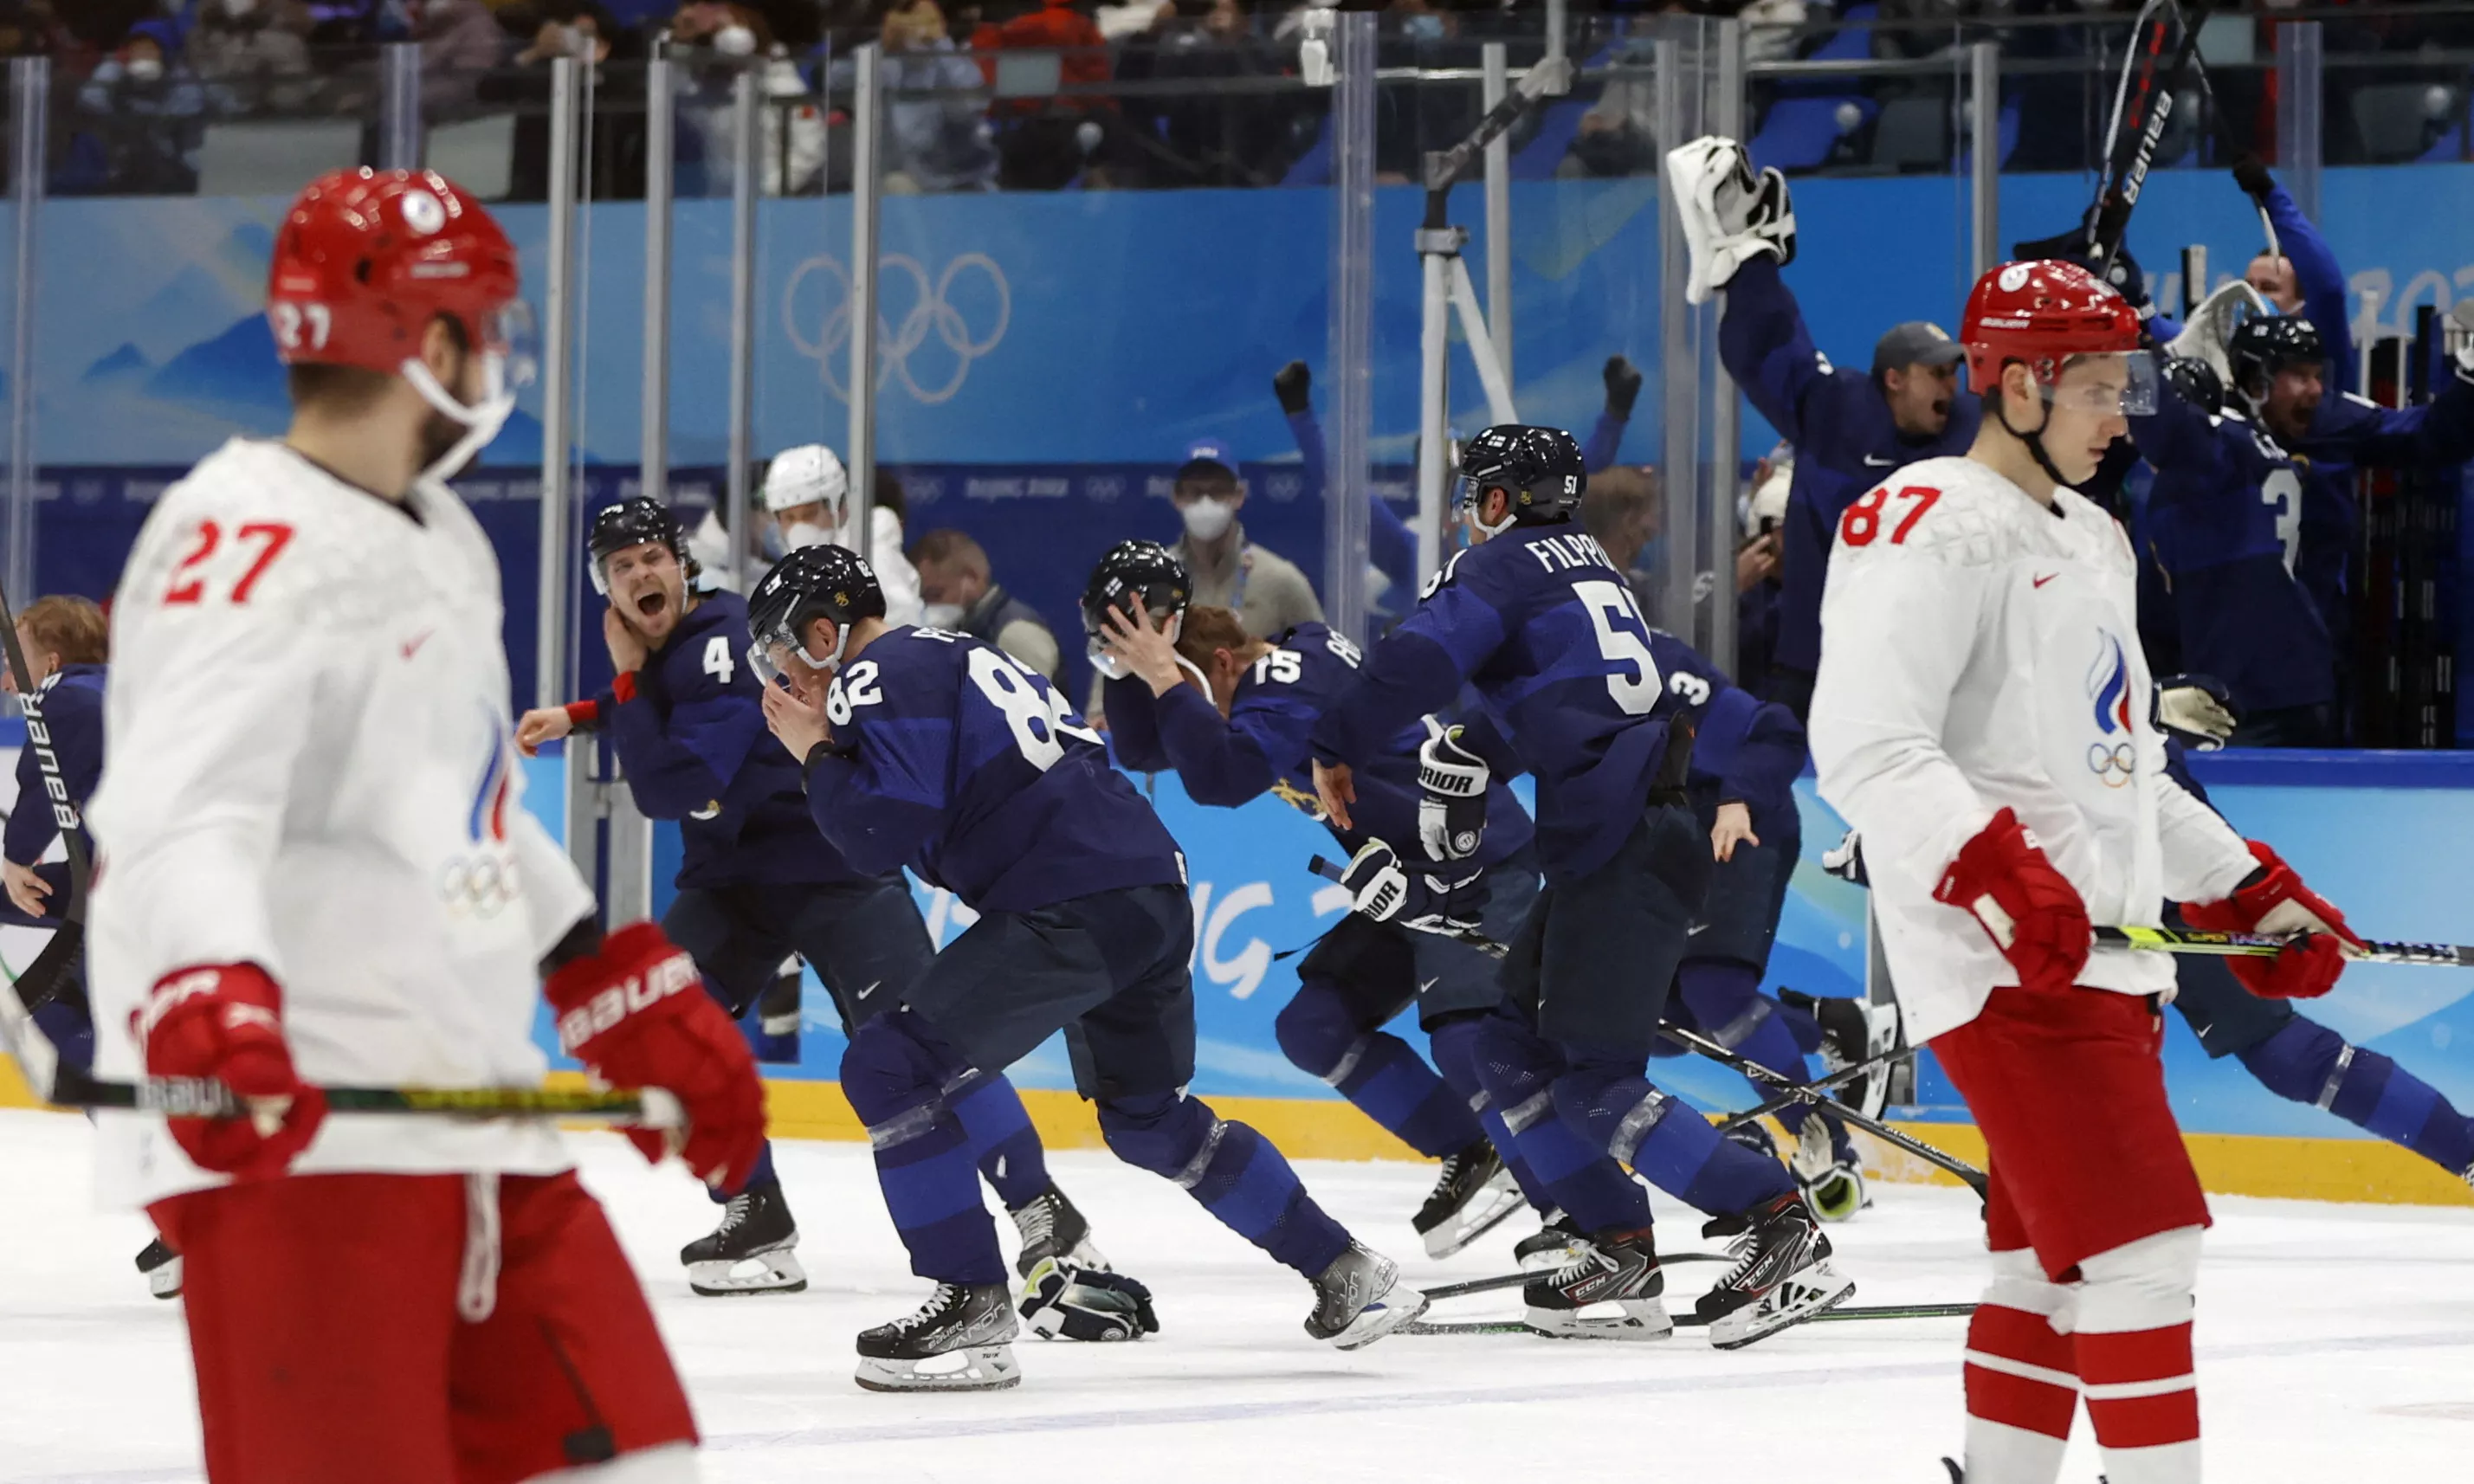 Финляндия стала олимпийским чемпионом по хоккею